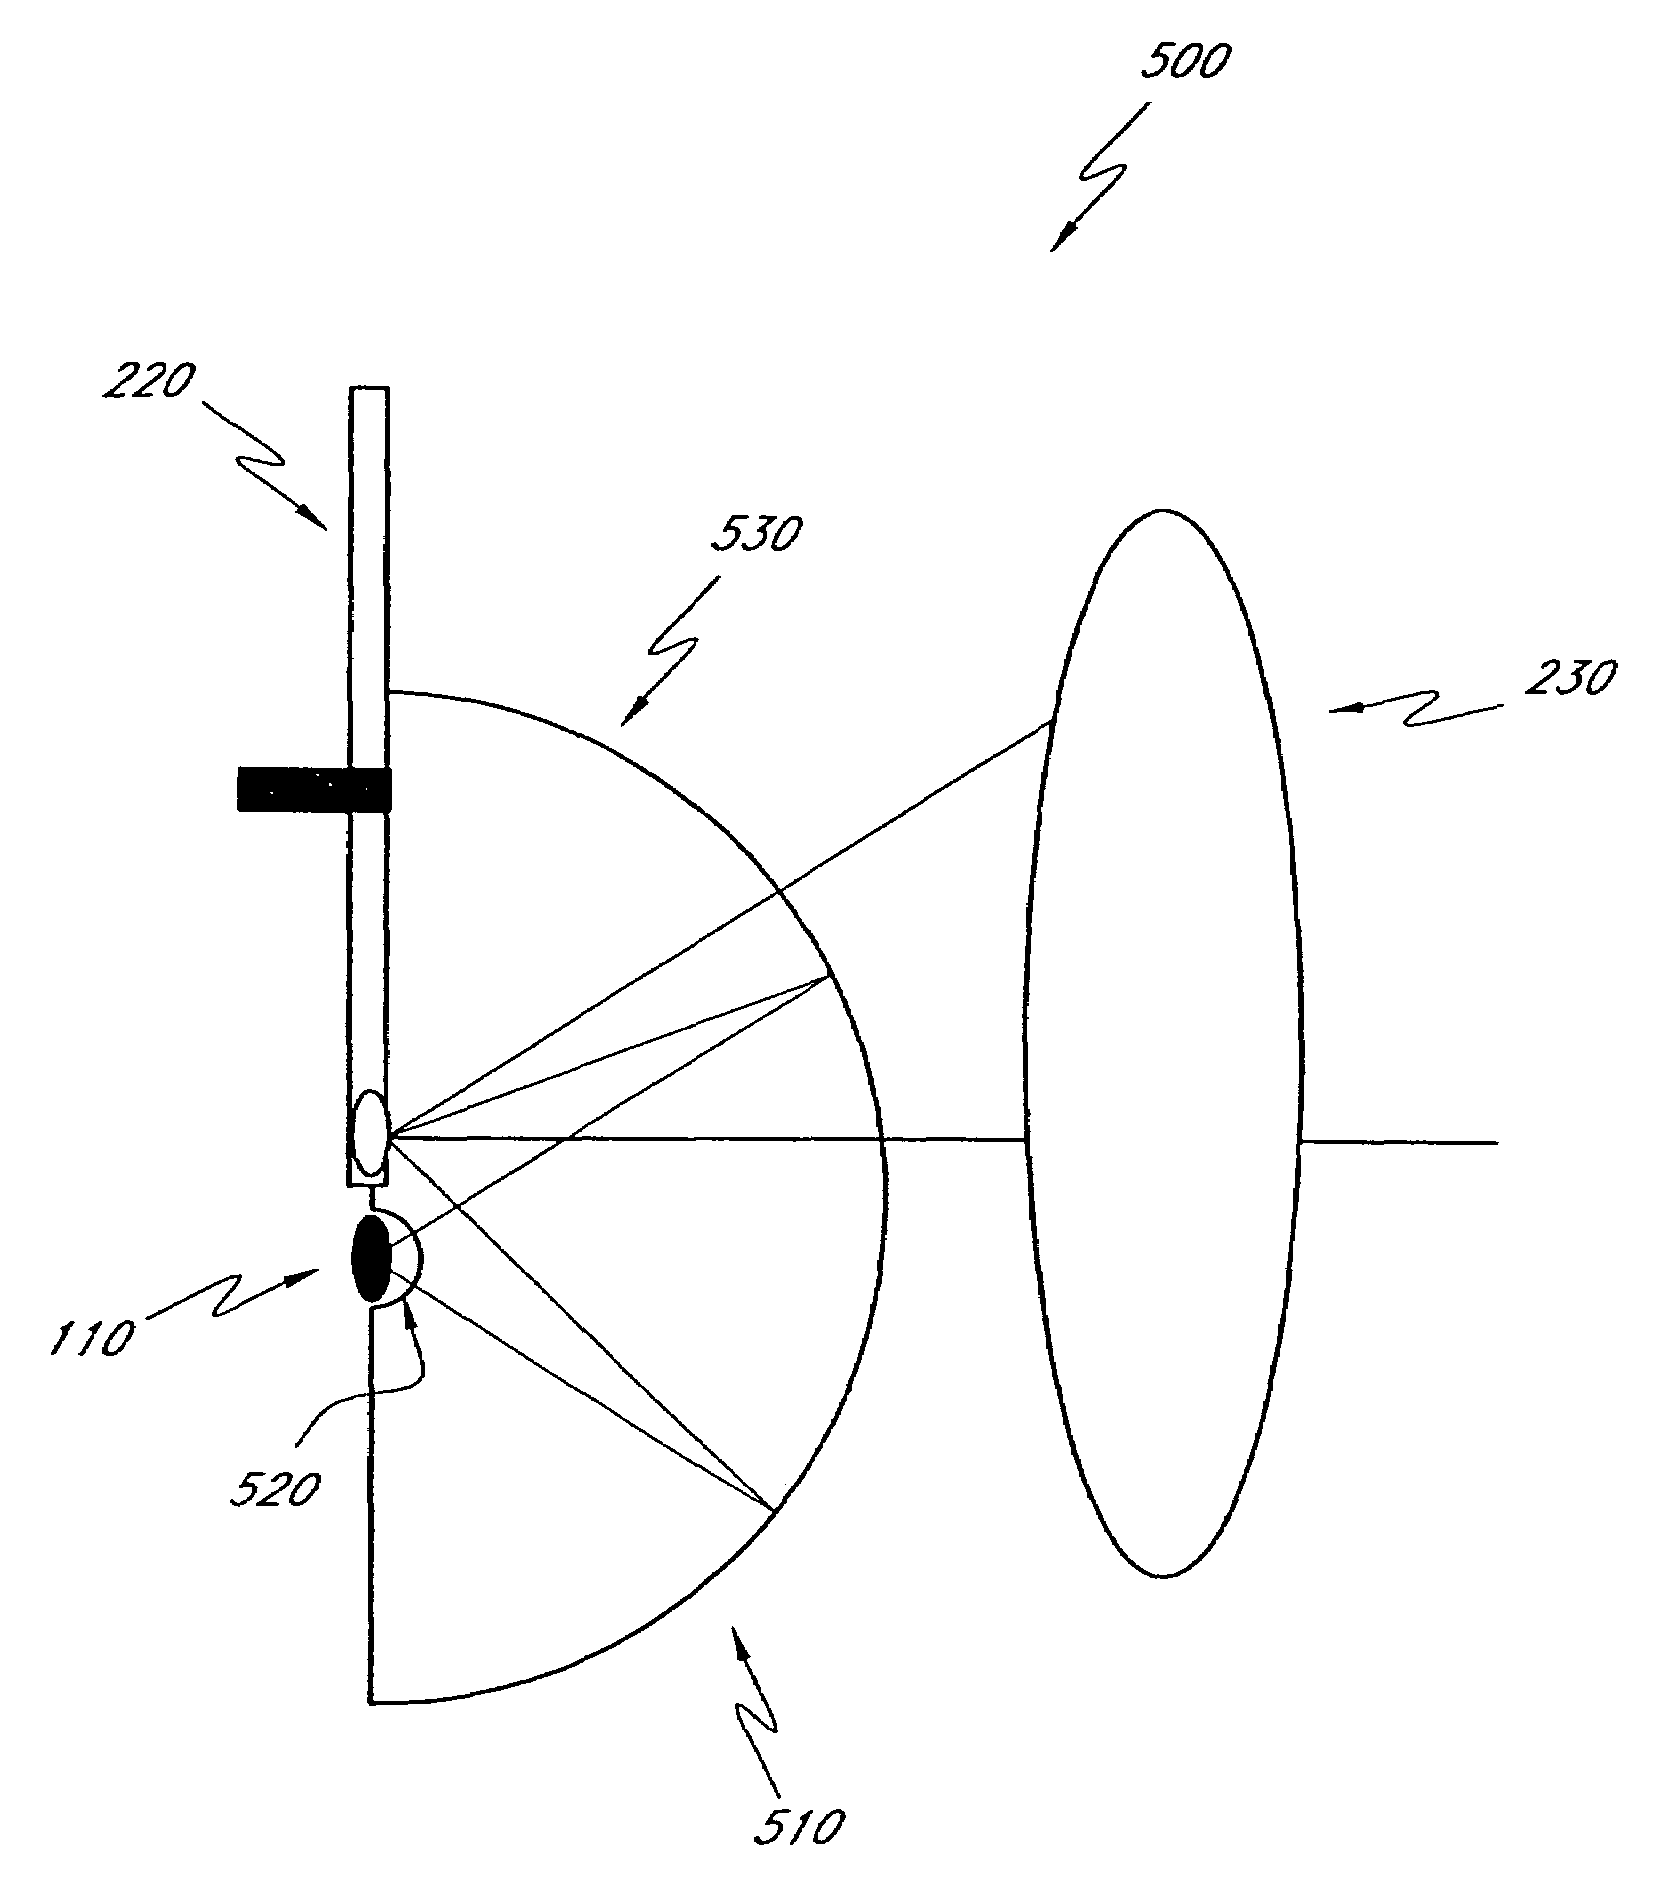 Phosphor wheel illuminator